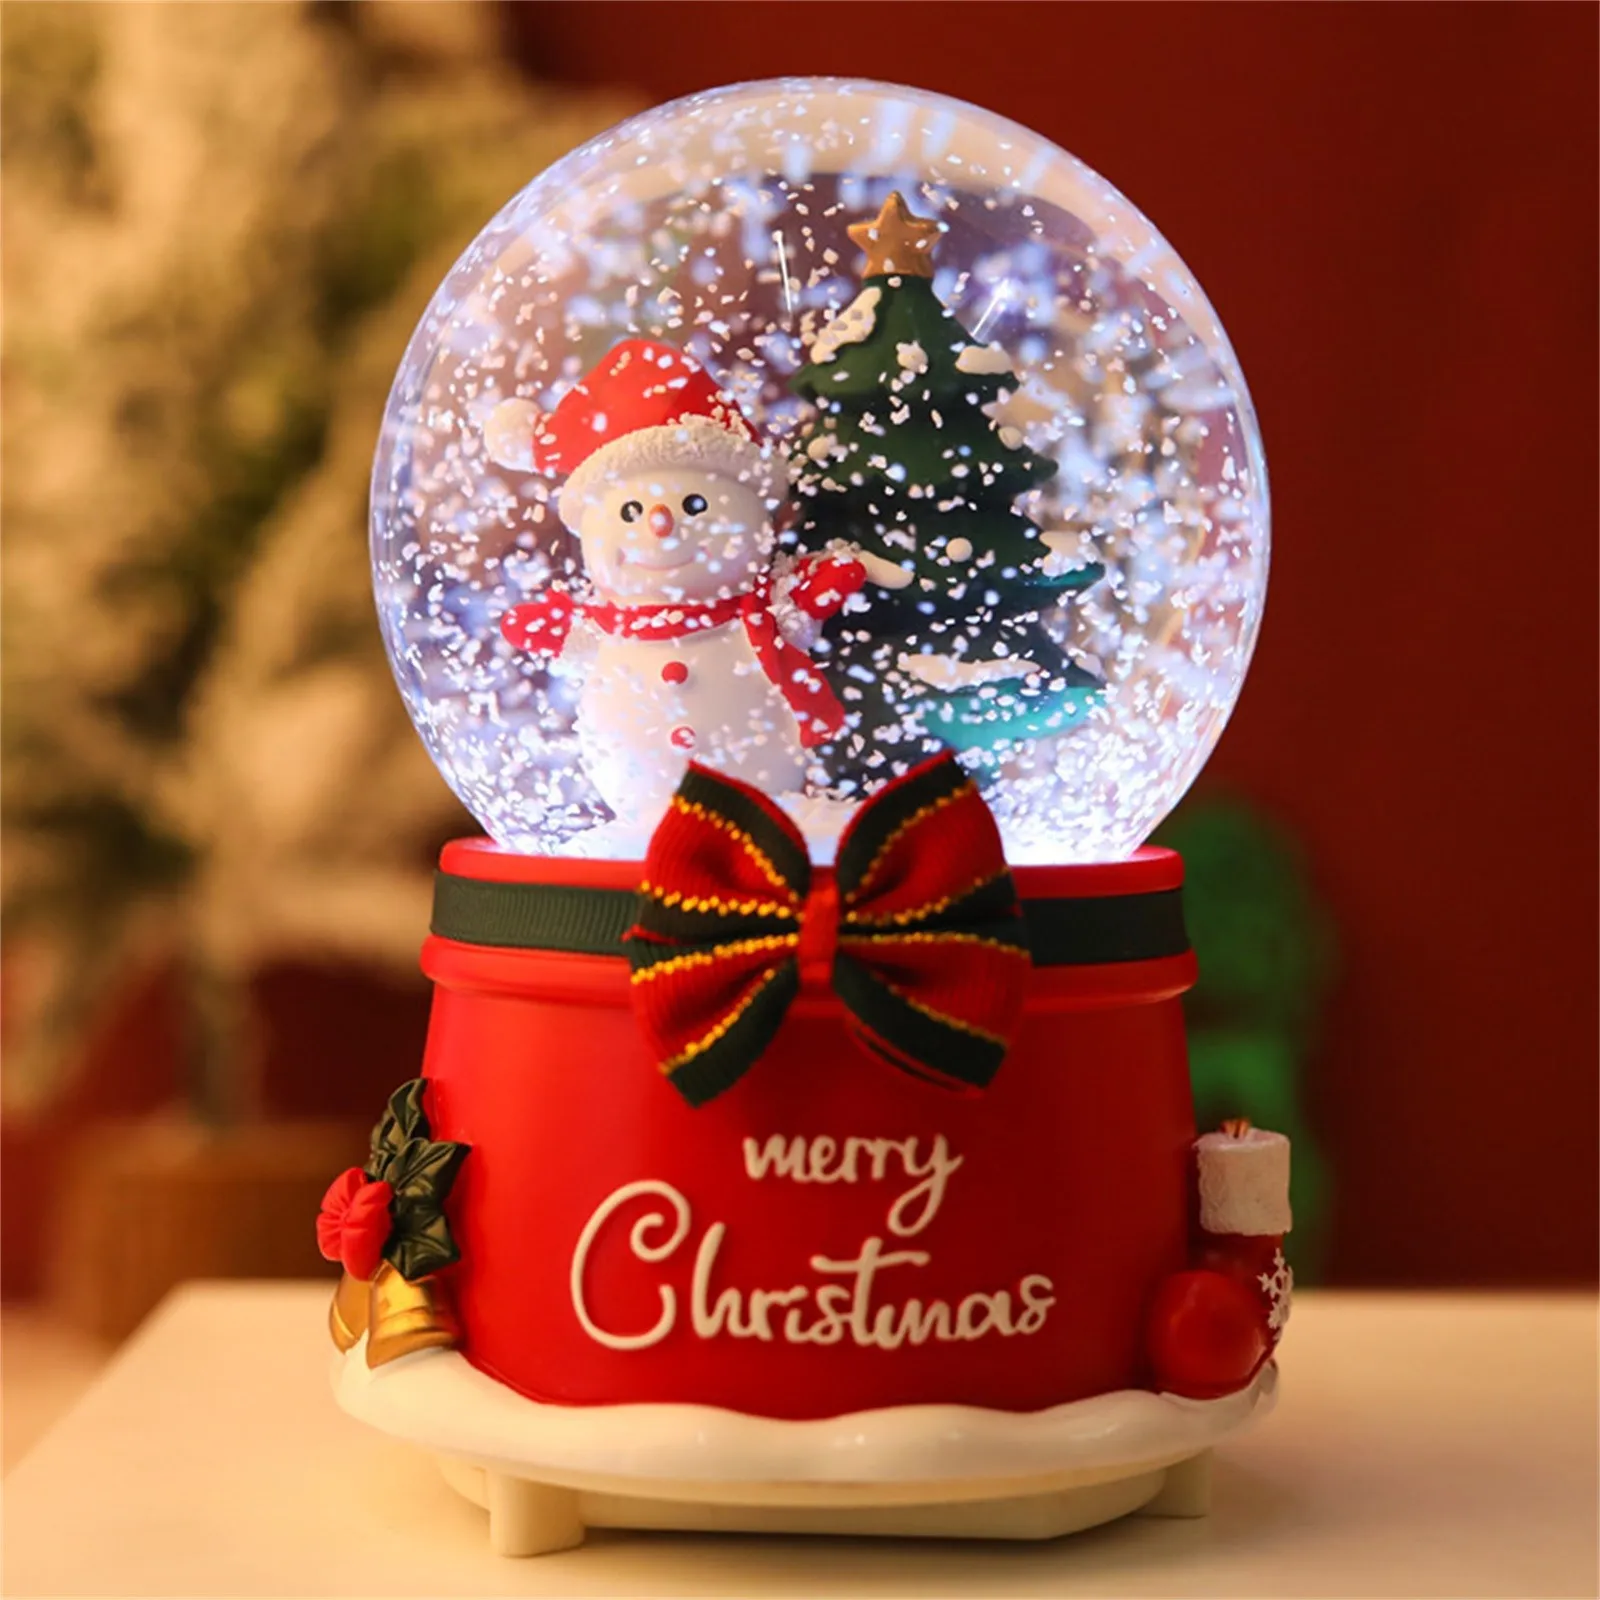 caja de música Huaxingda 5 en 1 Carrusel de Navidad bola de nieve nieve automática y 9 música bola de nieve 14,5 x 14,5 x 18,5 cm luz LED giratoria activada por voz 